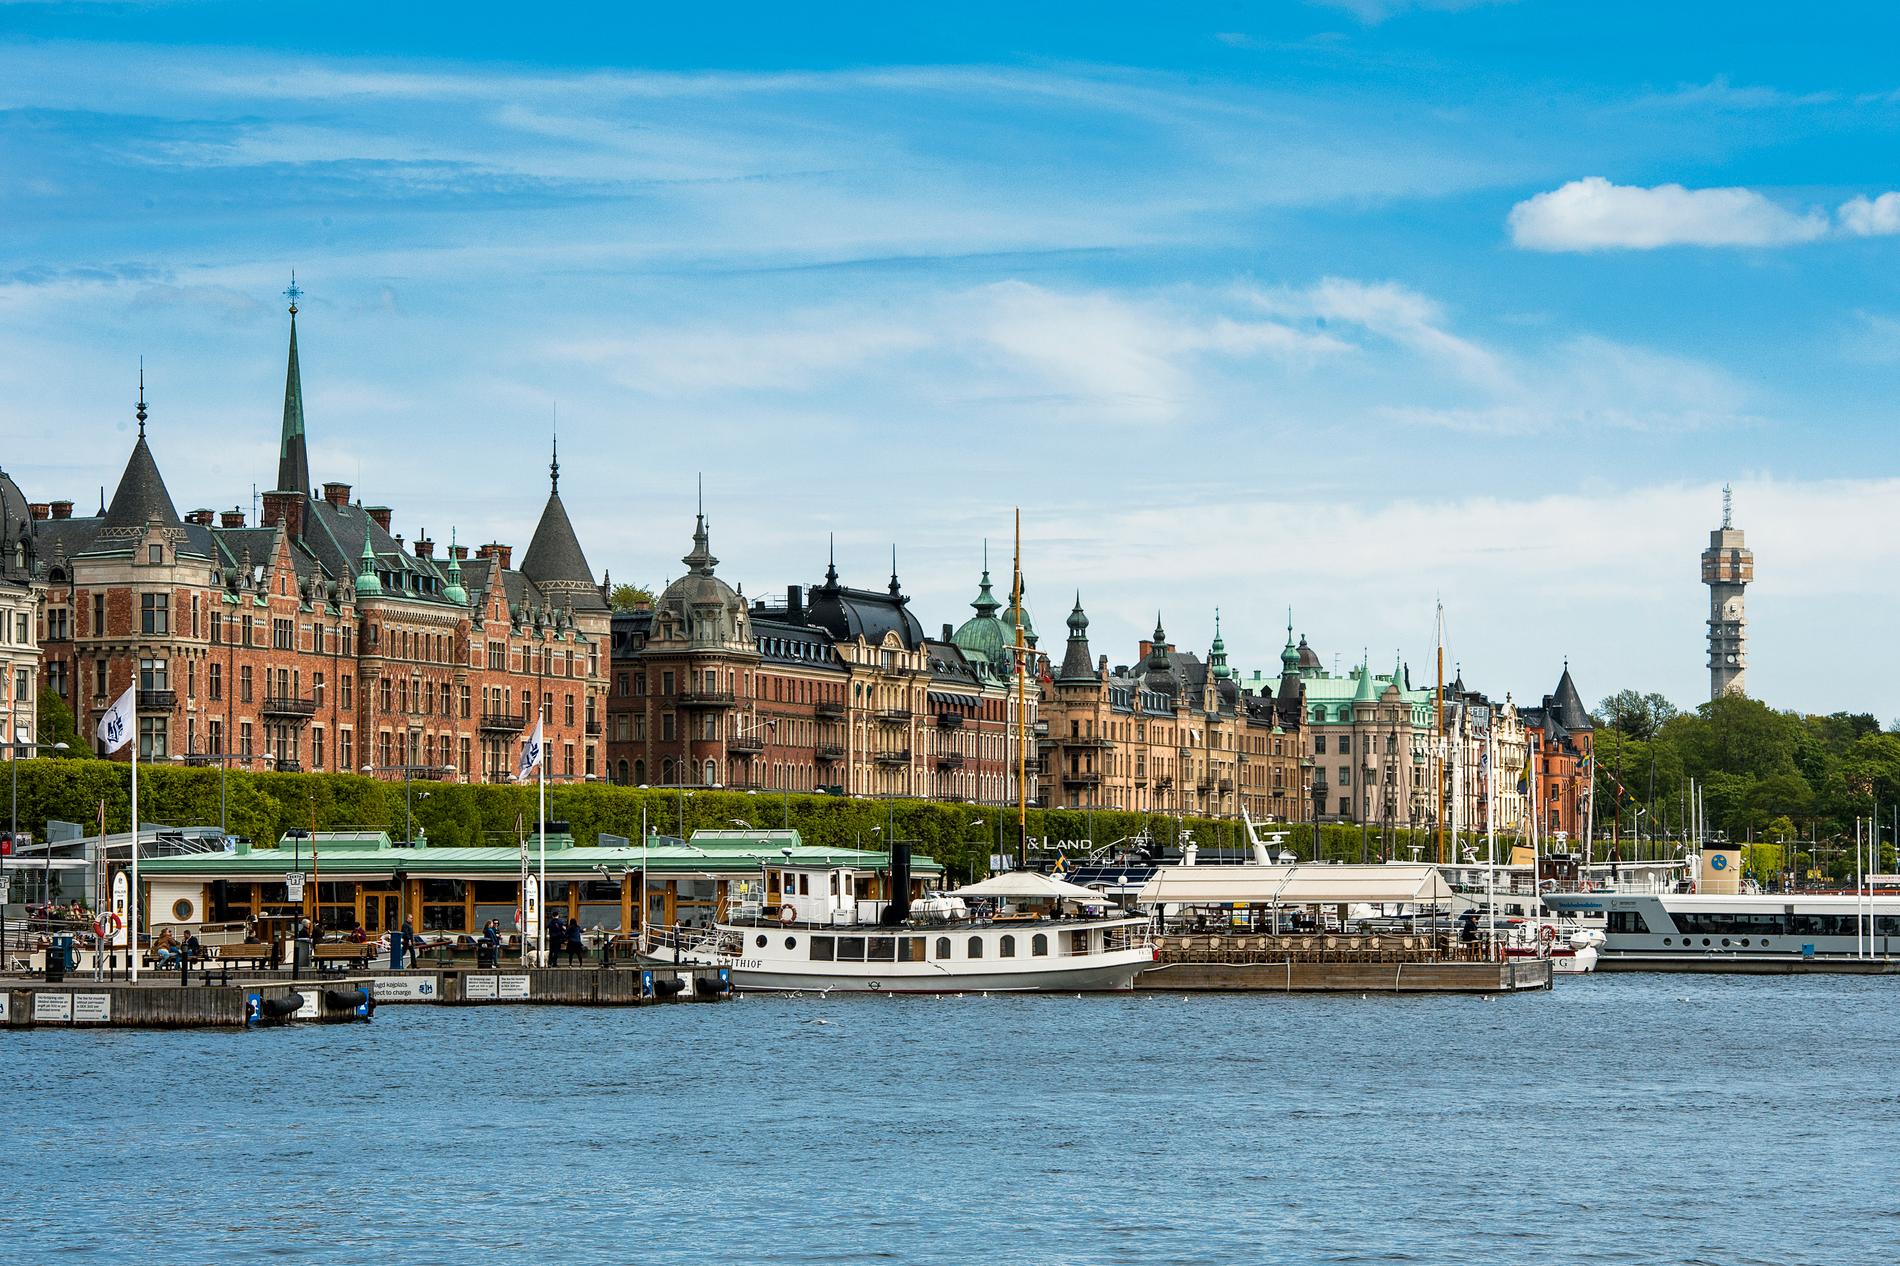 Strandvägen i Stockholm är en av de dyraste adresserna att köpa bostadsrätt på, enligt en färsk sammanställning. Arkivbild.